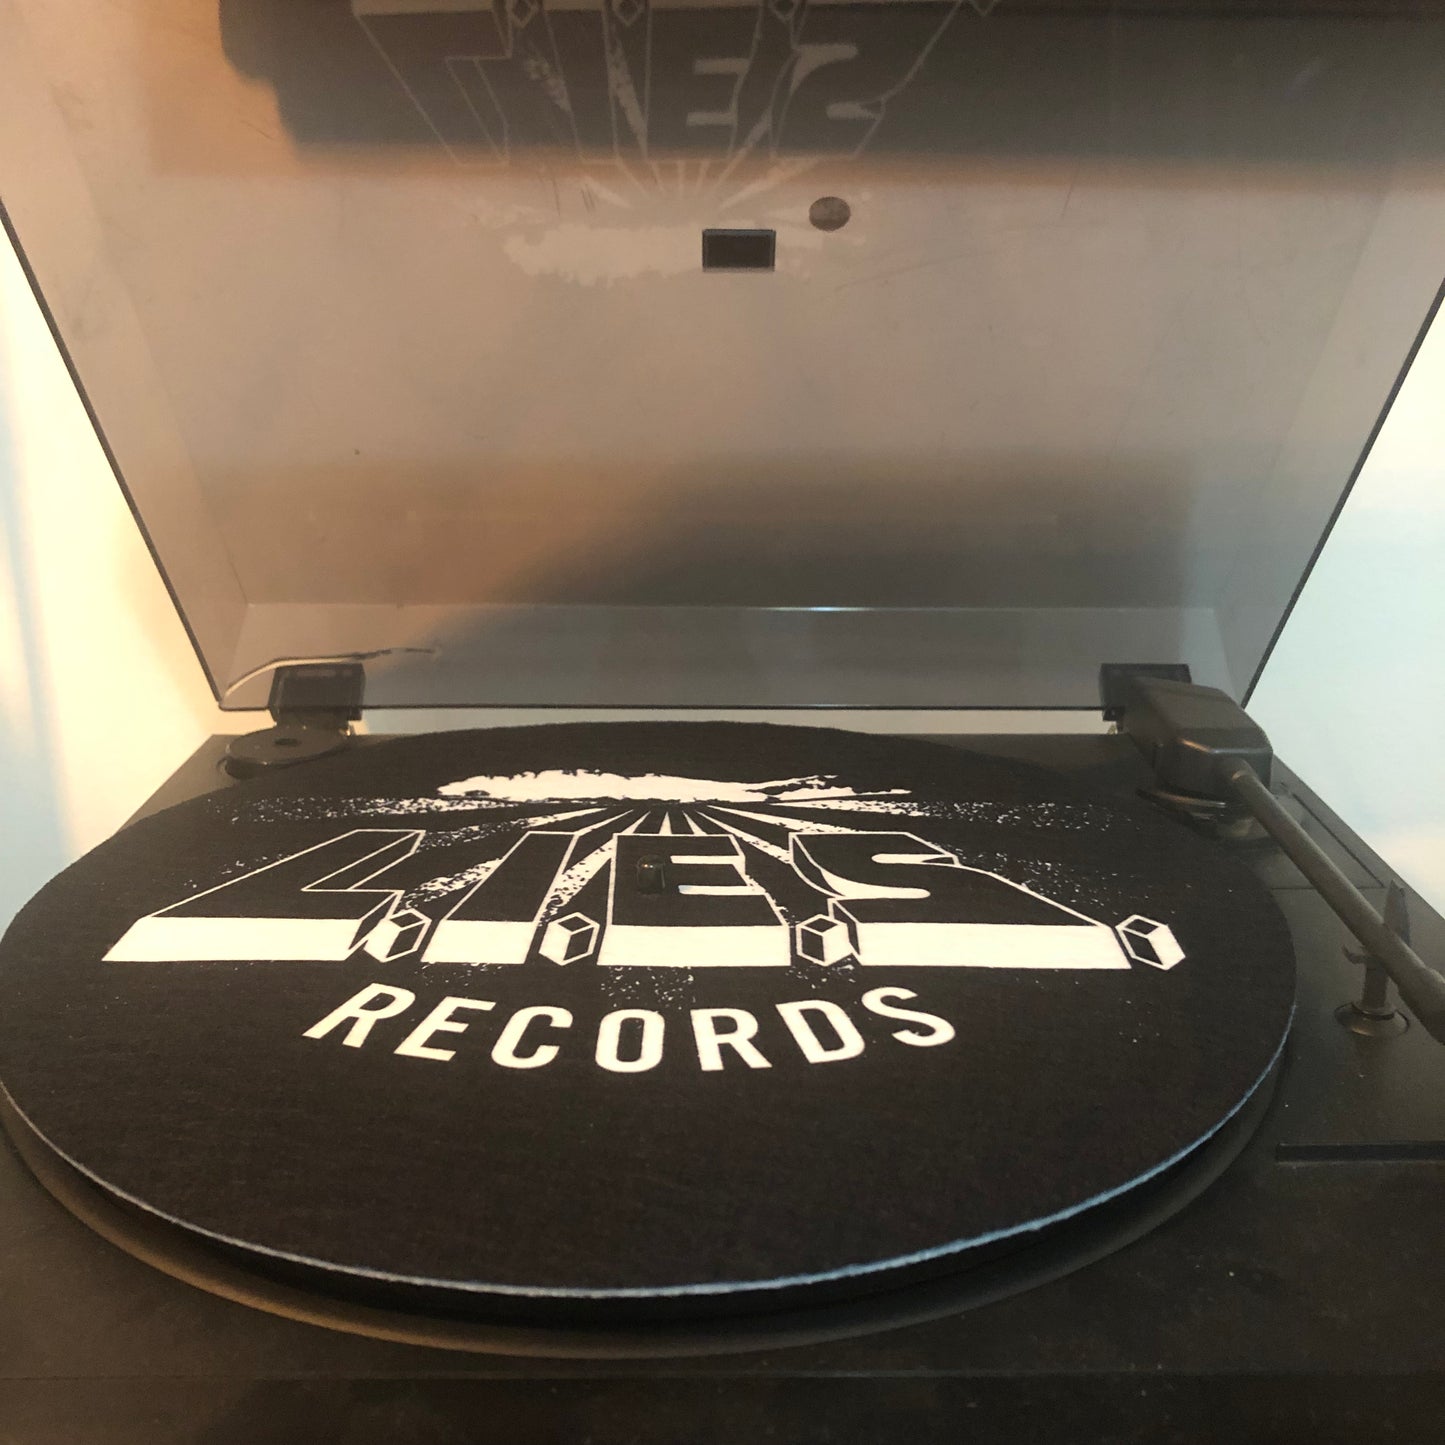 L.I.E.S. Records Slipmat